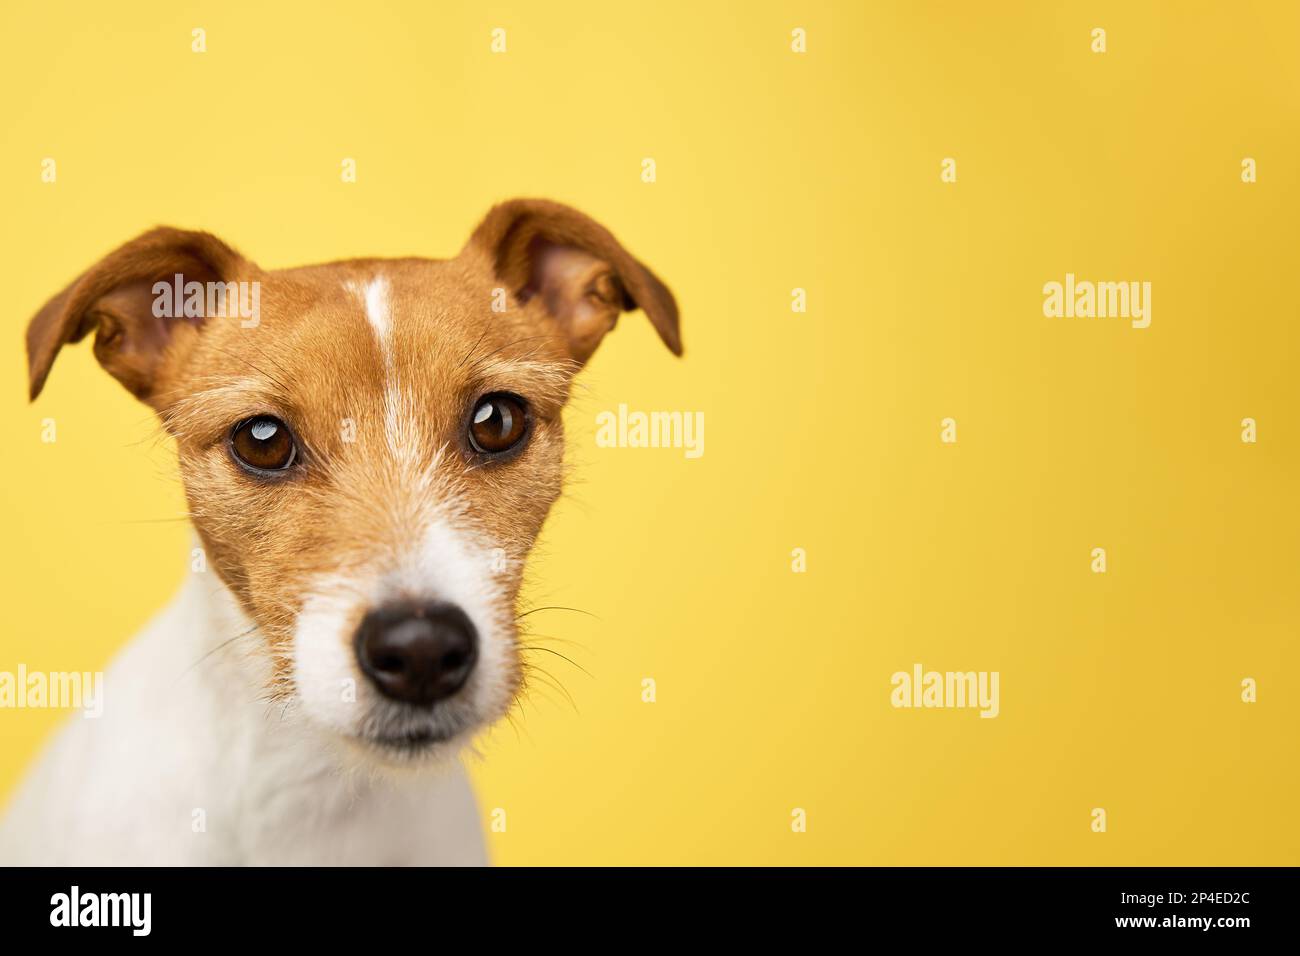 Curieux chien intéressé regarde dans l'appareil photo. Jack russell terrier portrait de près sur fond jaune. Animal de compagnie drôle Banque D'Images